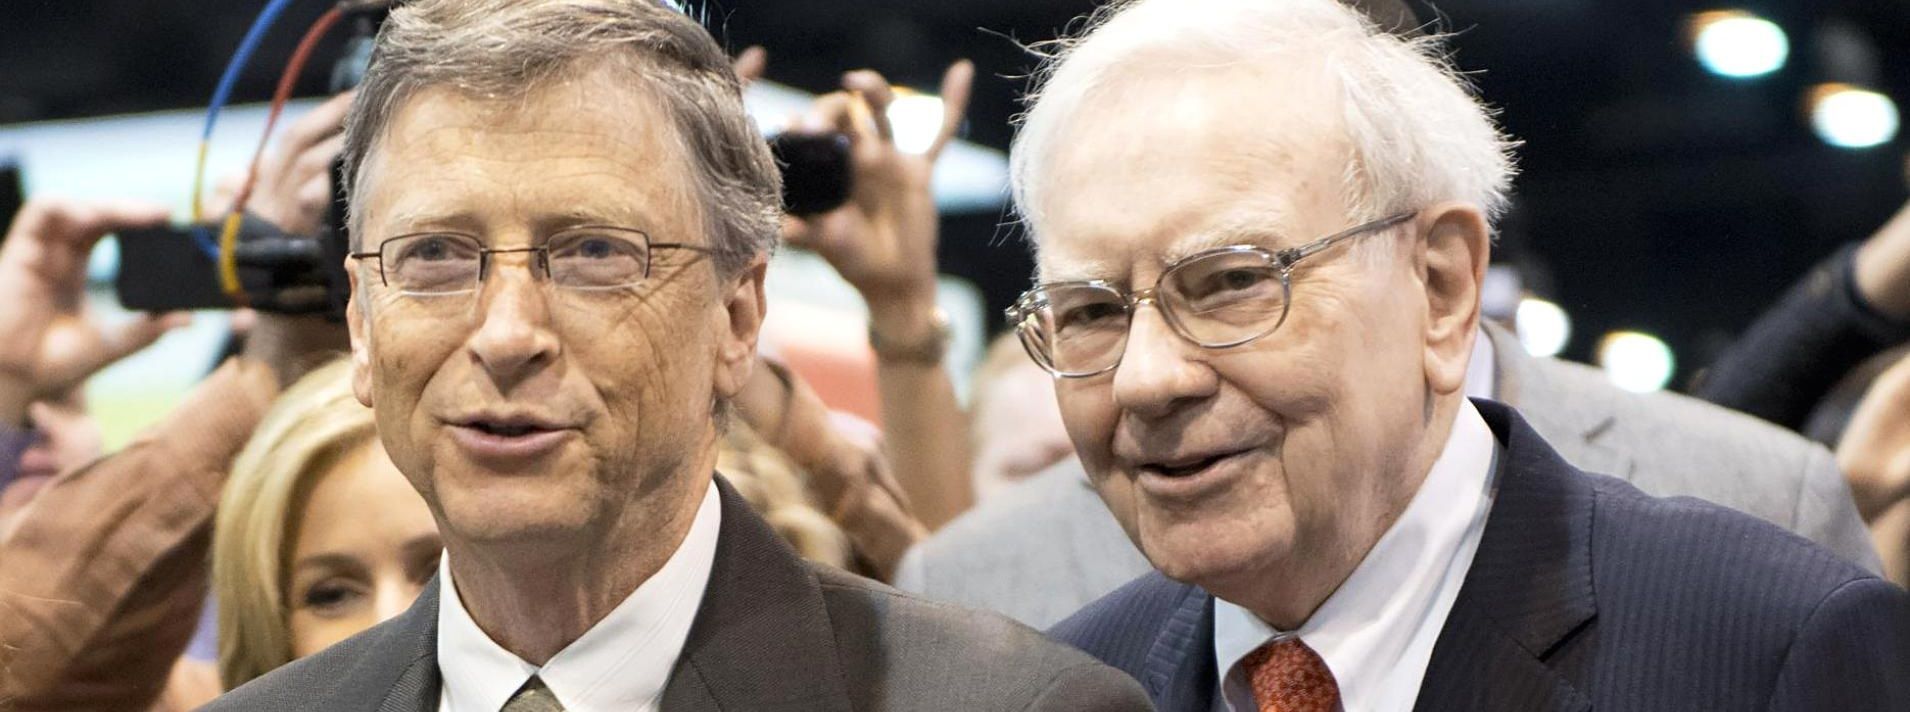 5 thói quen giản dị của Warren Buffett mà không phải vị tỷ phú nào cũng có